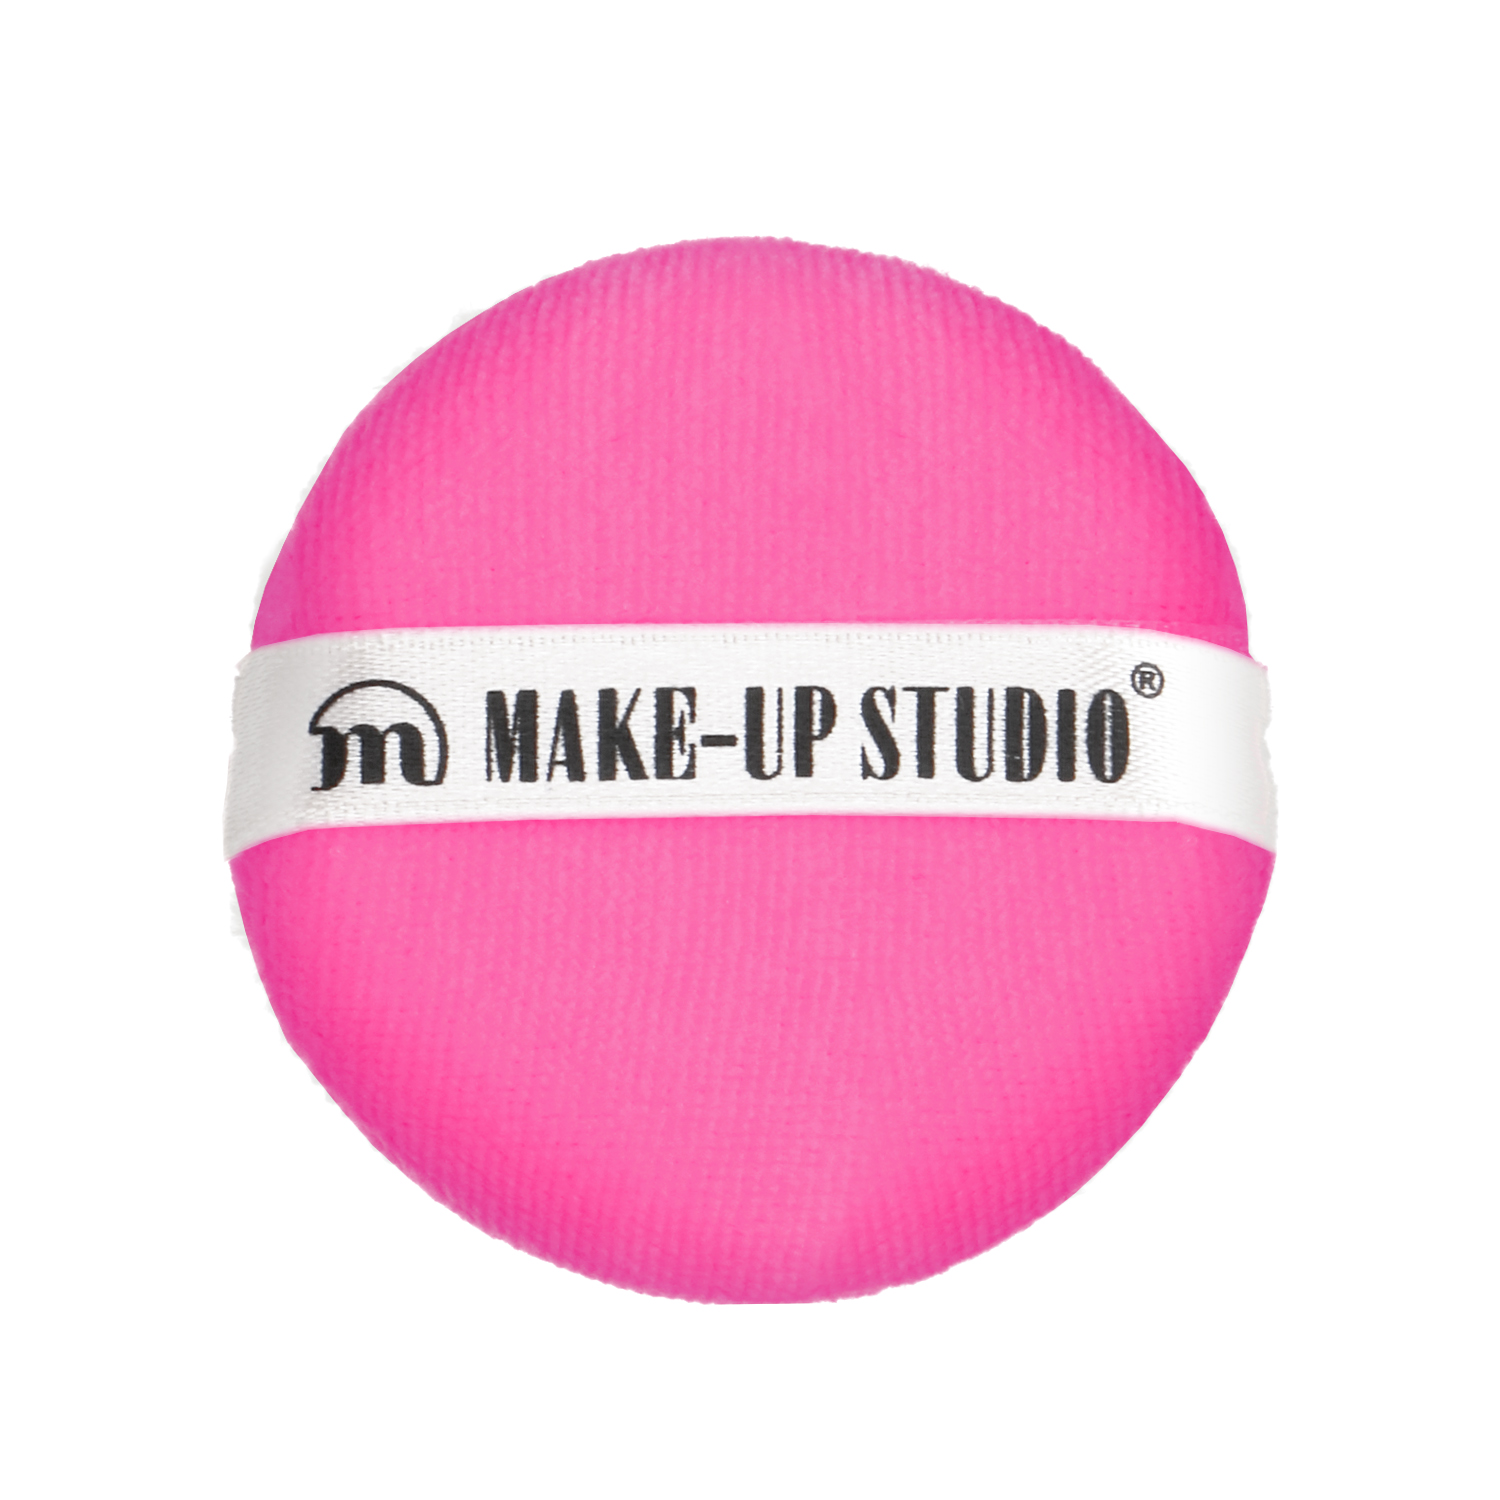  Powder Puff Poederspons - Dark Pink/Roze (D55 mm)